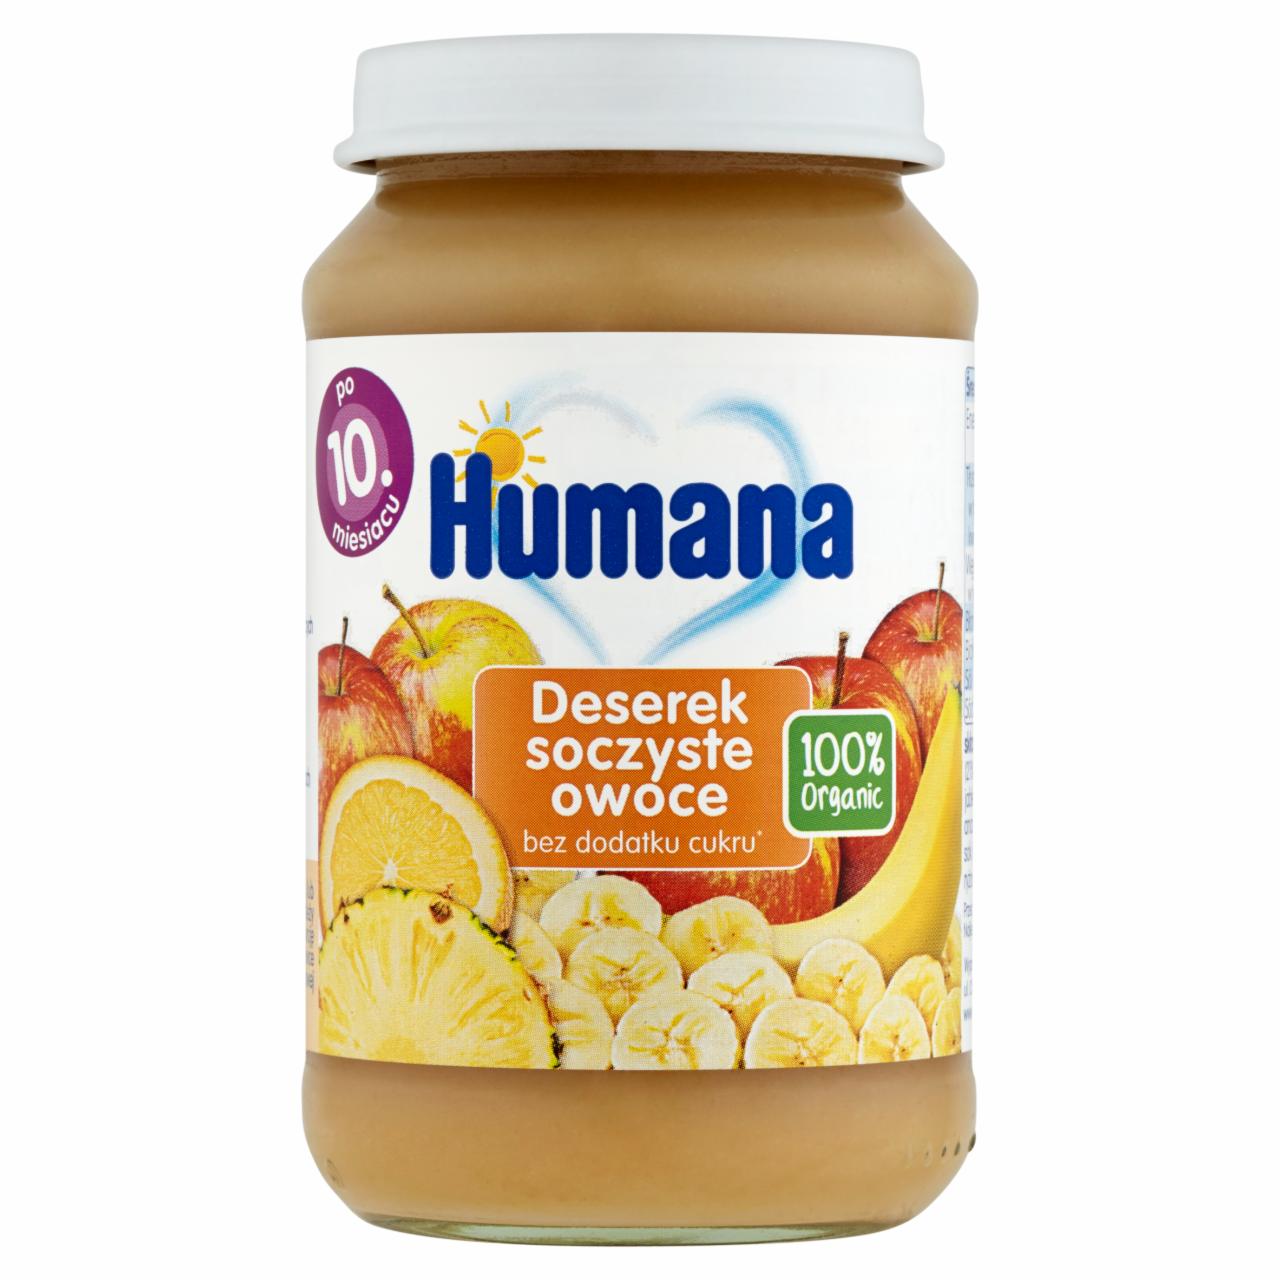 Zdjęcia - Humana 100% Organic Deserek soczyste owoce po 10. miesiącu 190 g